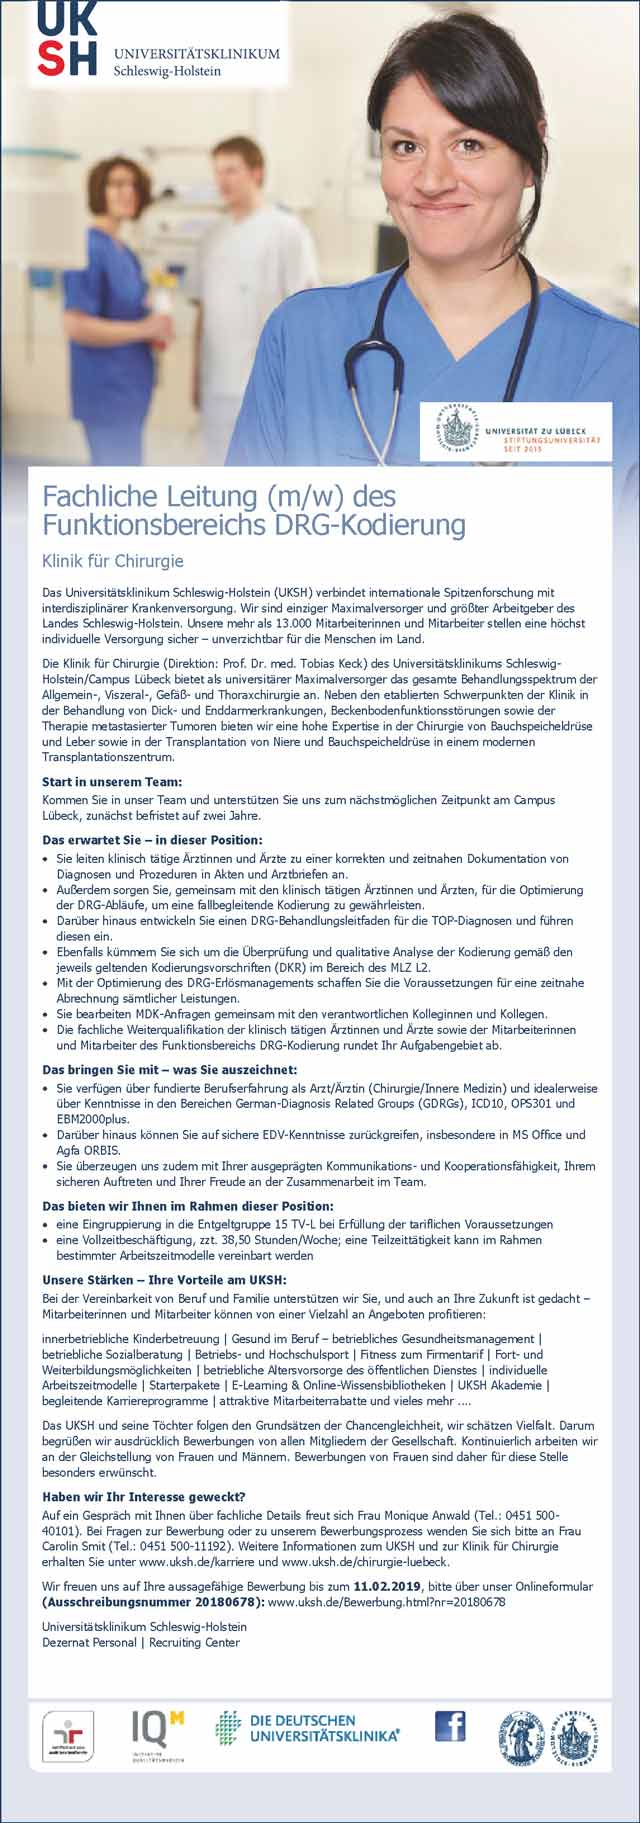 Universitätsklinikum Schleswig-Holstein: Fachliche Leitung DRG-Kodierung (m/w)